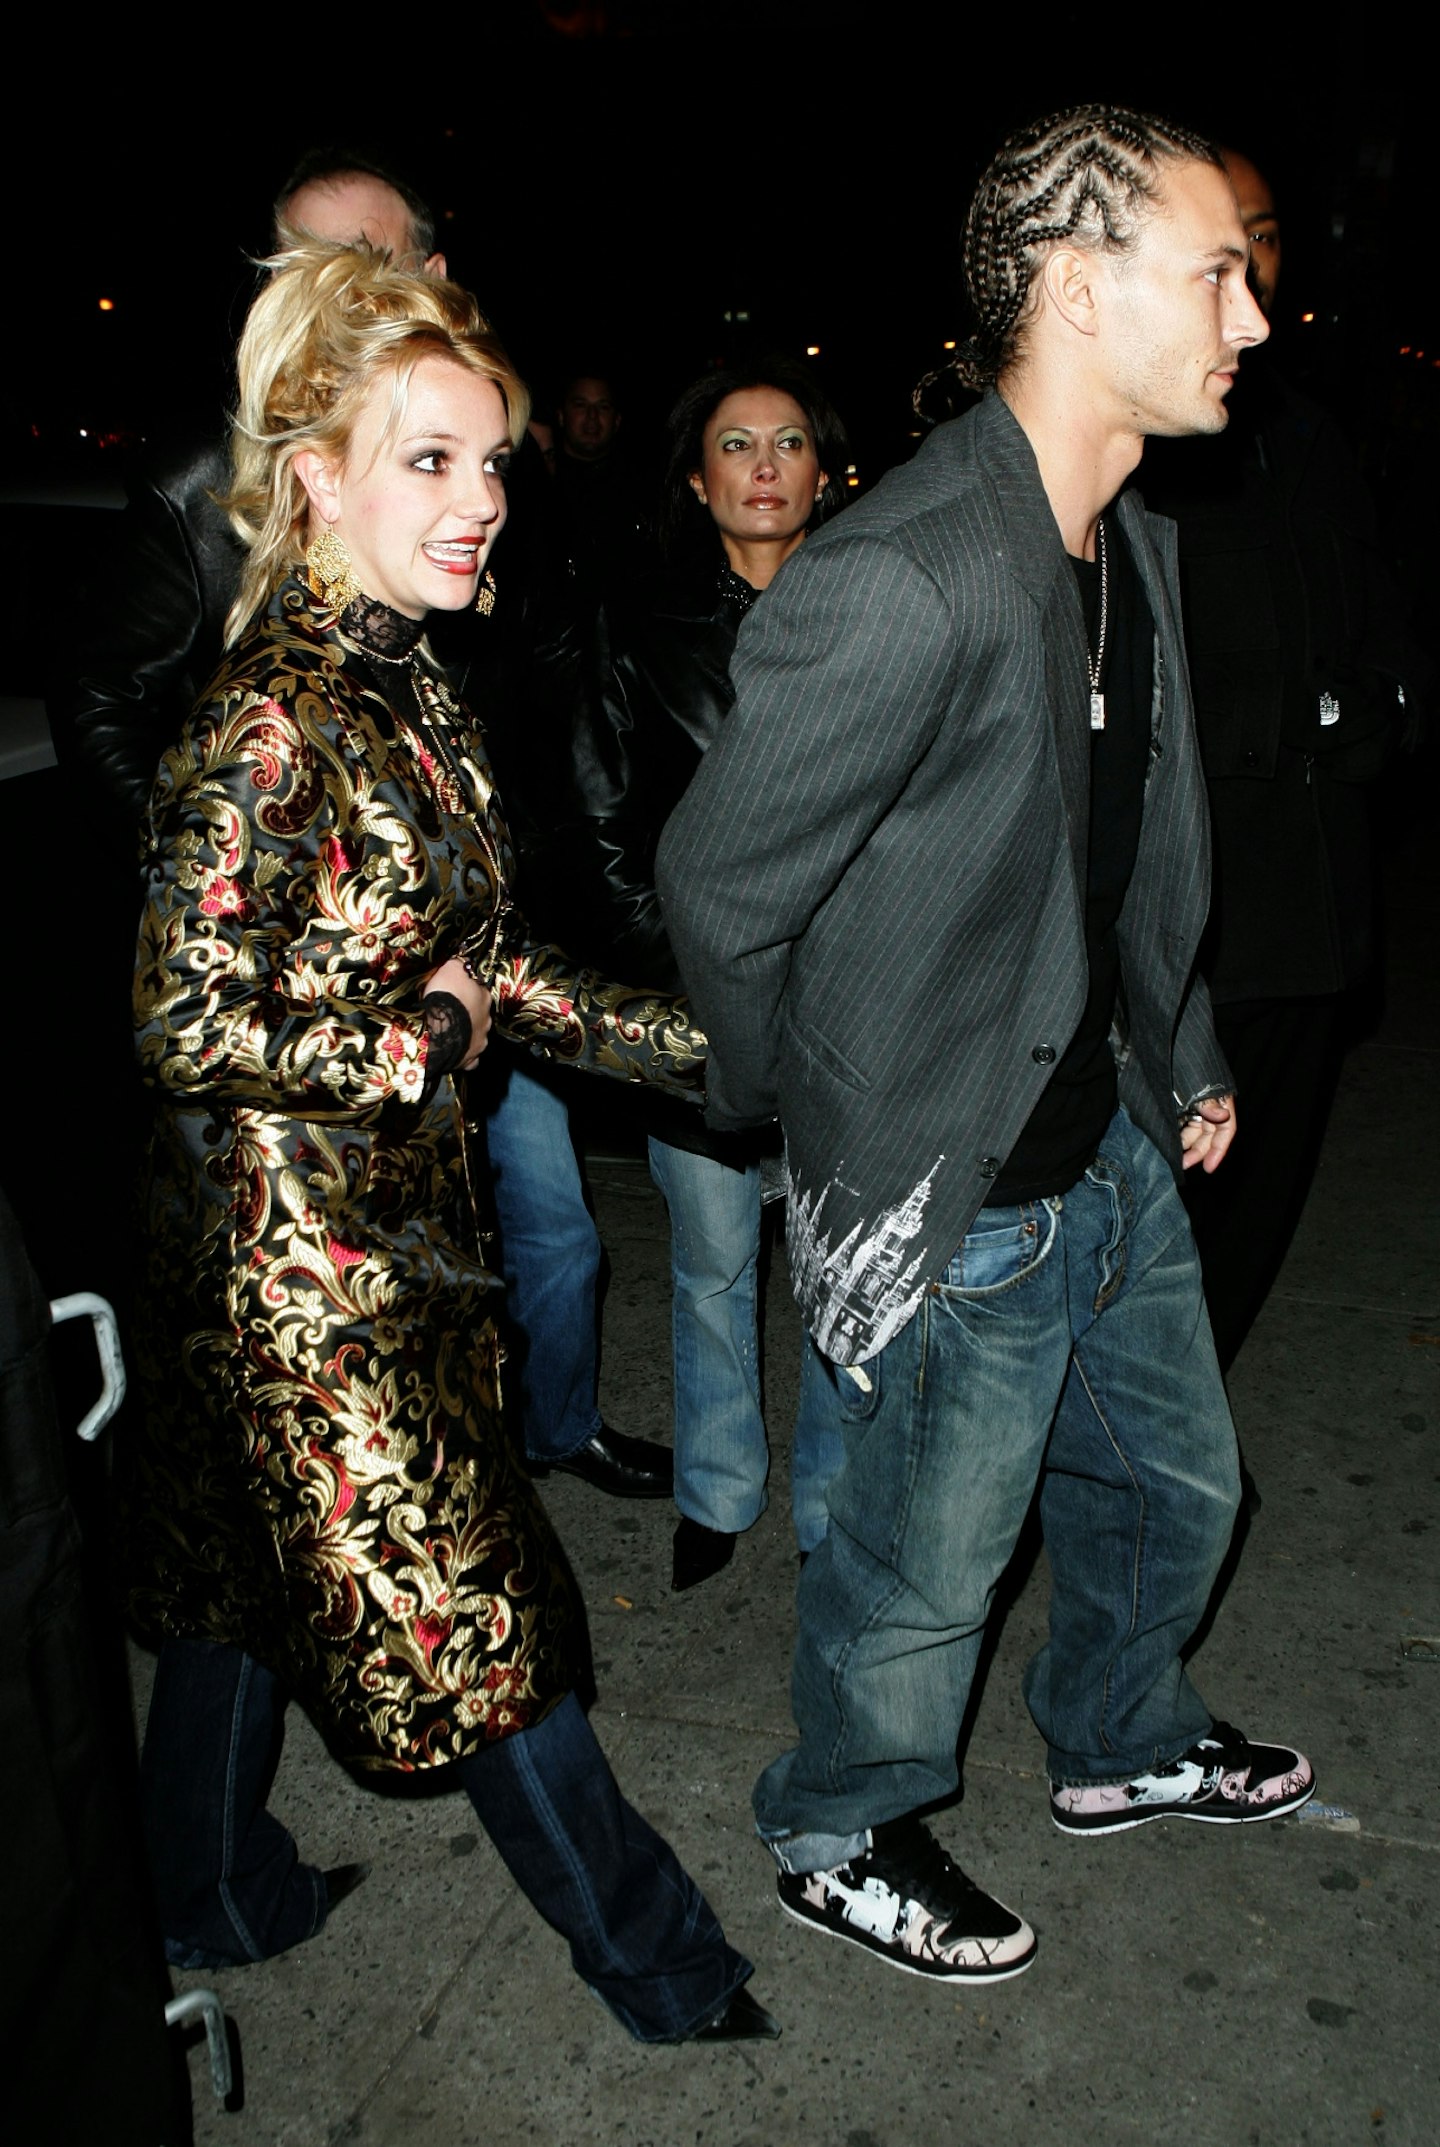 Britney Spears and her ex-husband Kevin Federline